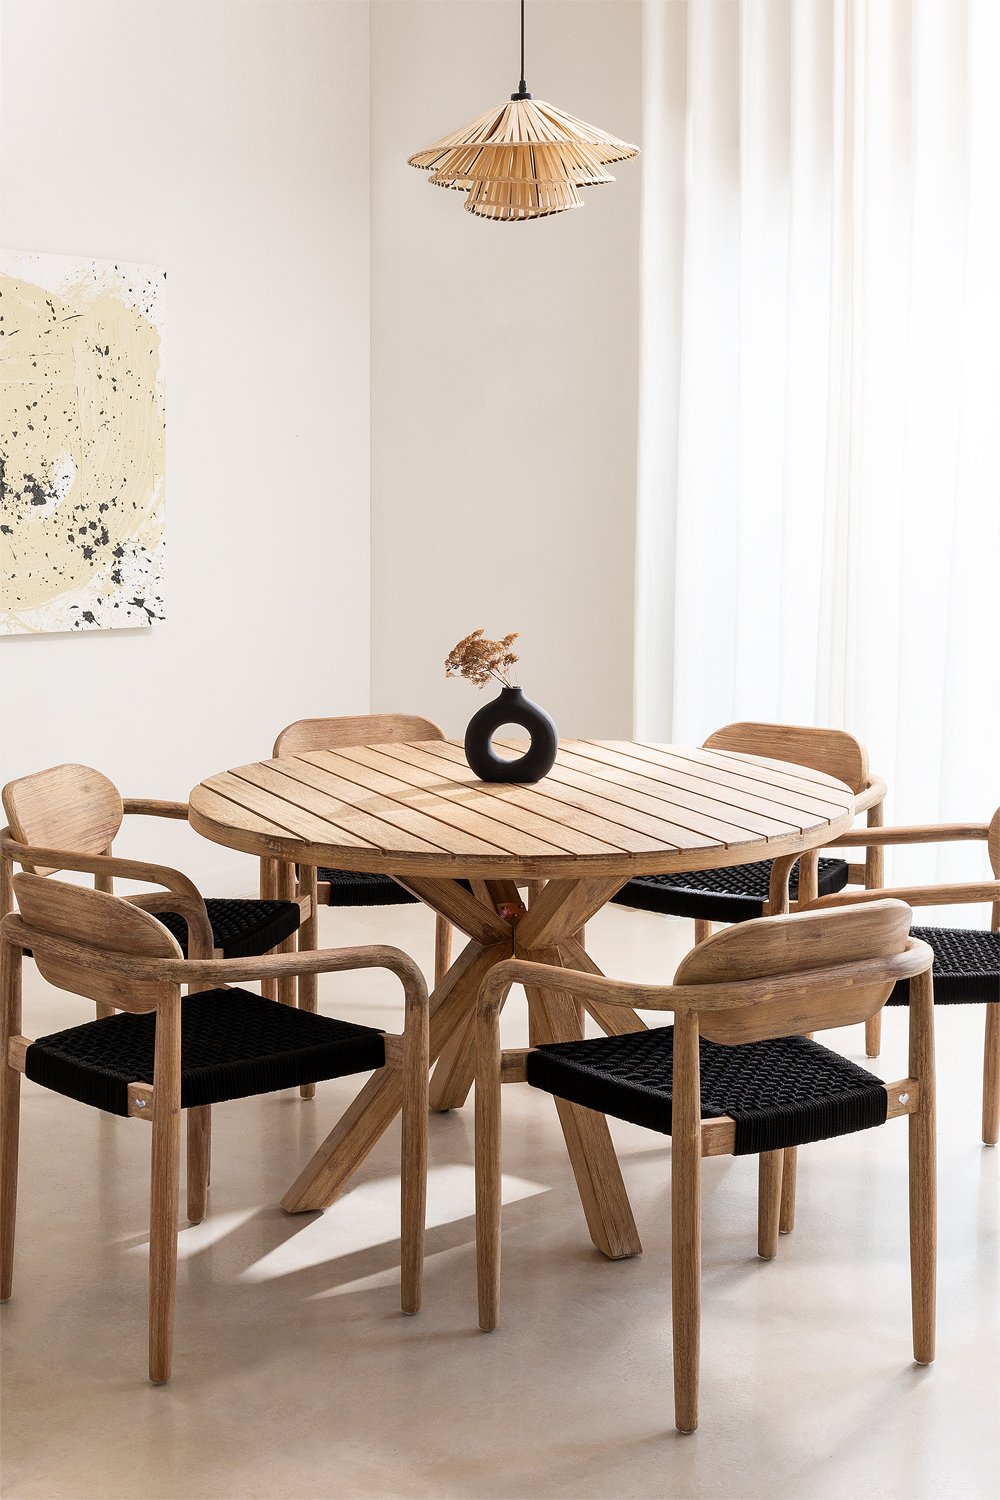 Ronde tafelset (Ø120 cm) en 6 eetkamerstoelen met armleuningen in hout Naele, galerij beeld 1